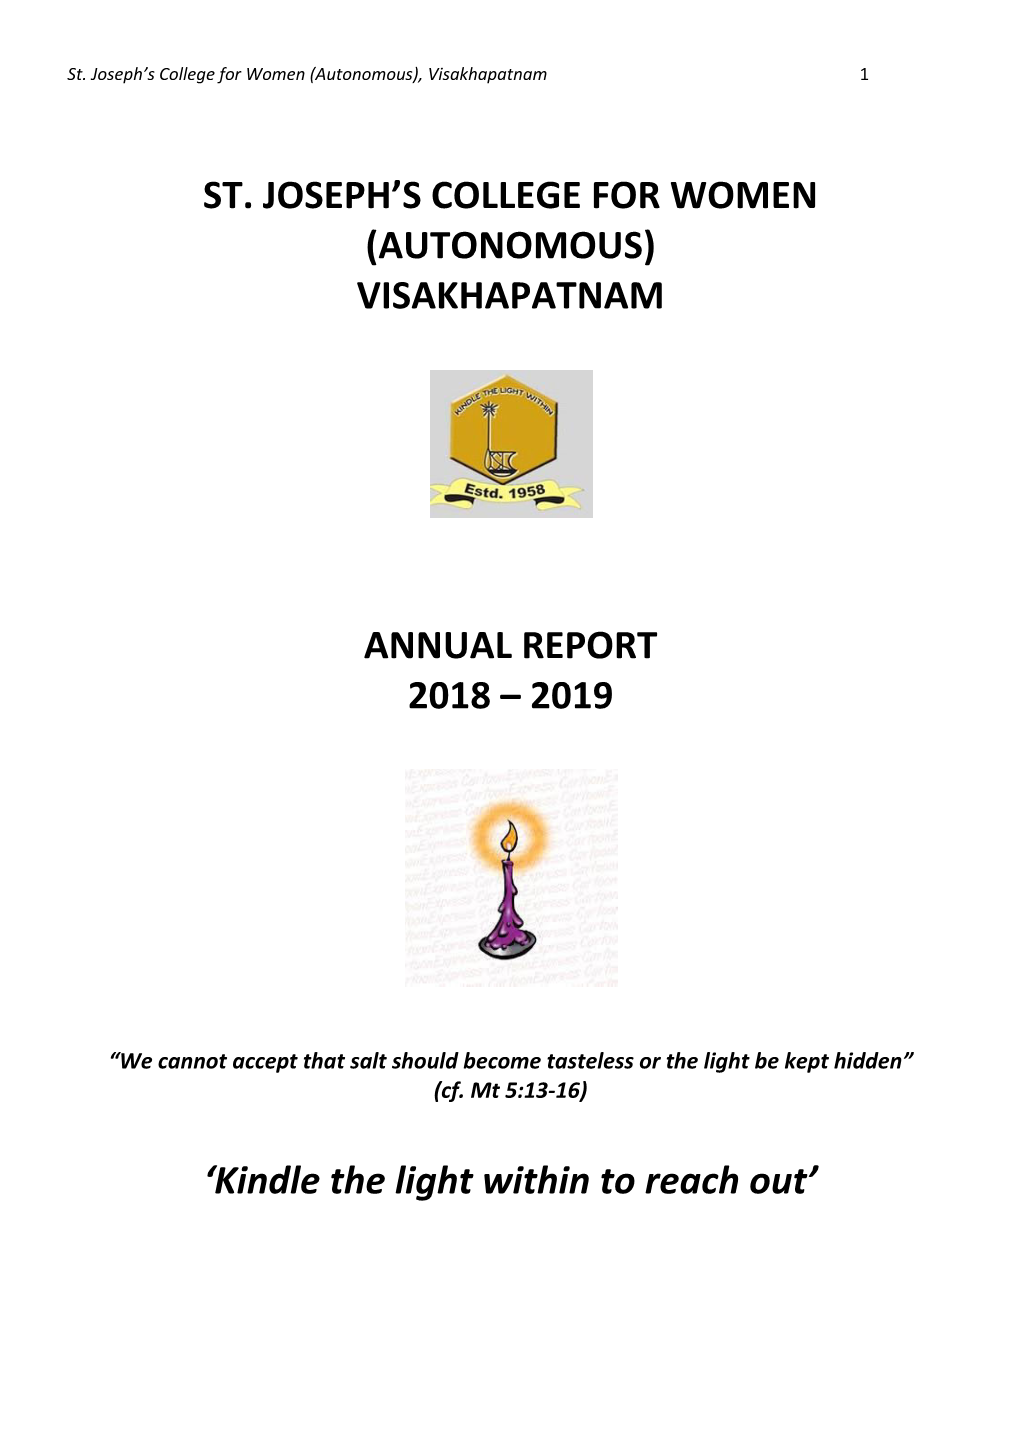 (Autonomous) Visakhapatnam Annual Report 2018 – 2019